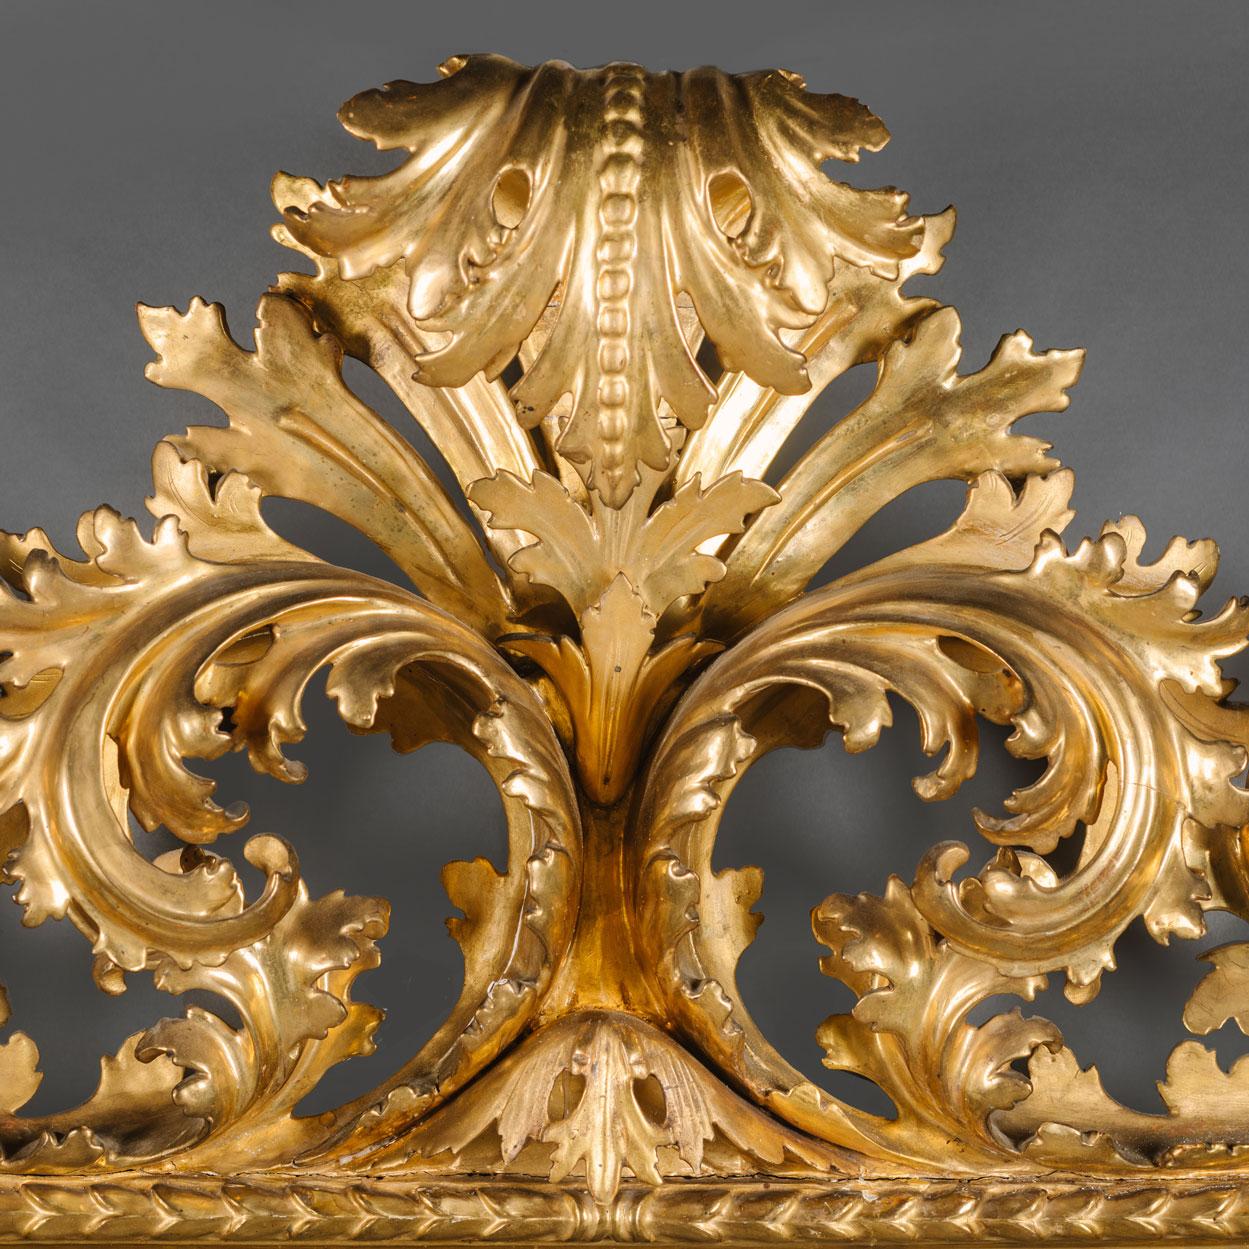 Un grand miroir en bois doré florentin sculpté dans le style néo-baroque. 

Cet impressionnant miroir présente une plaque de verre rectangulaire biseautée dans un cadre sculpté d'acanthe à volutes, avec une crête centrale d'acanthe frondée et un